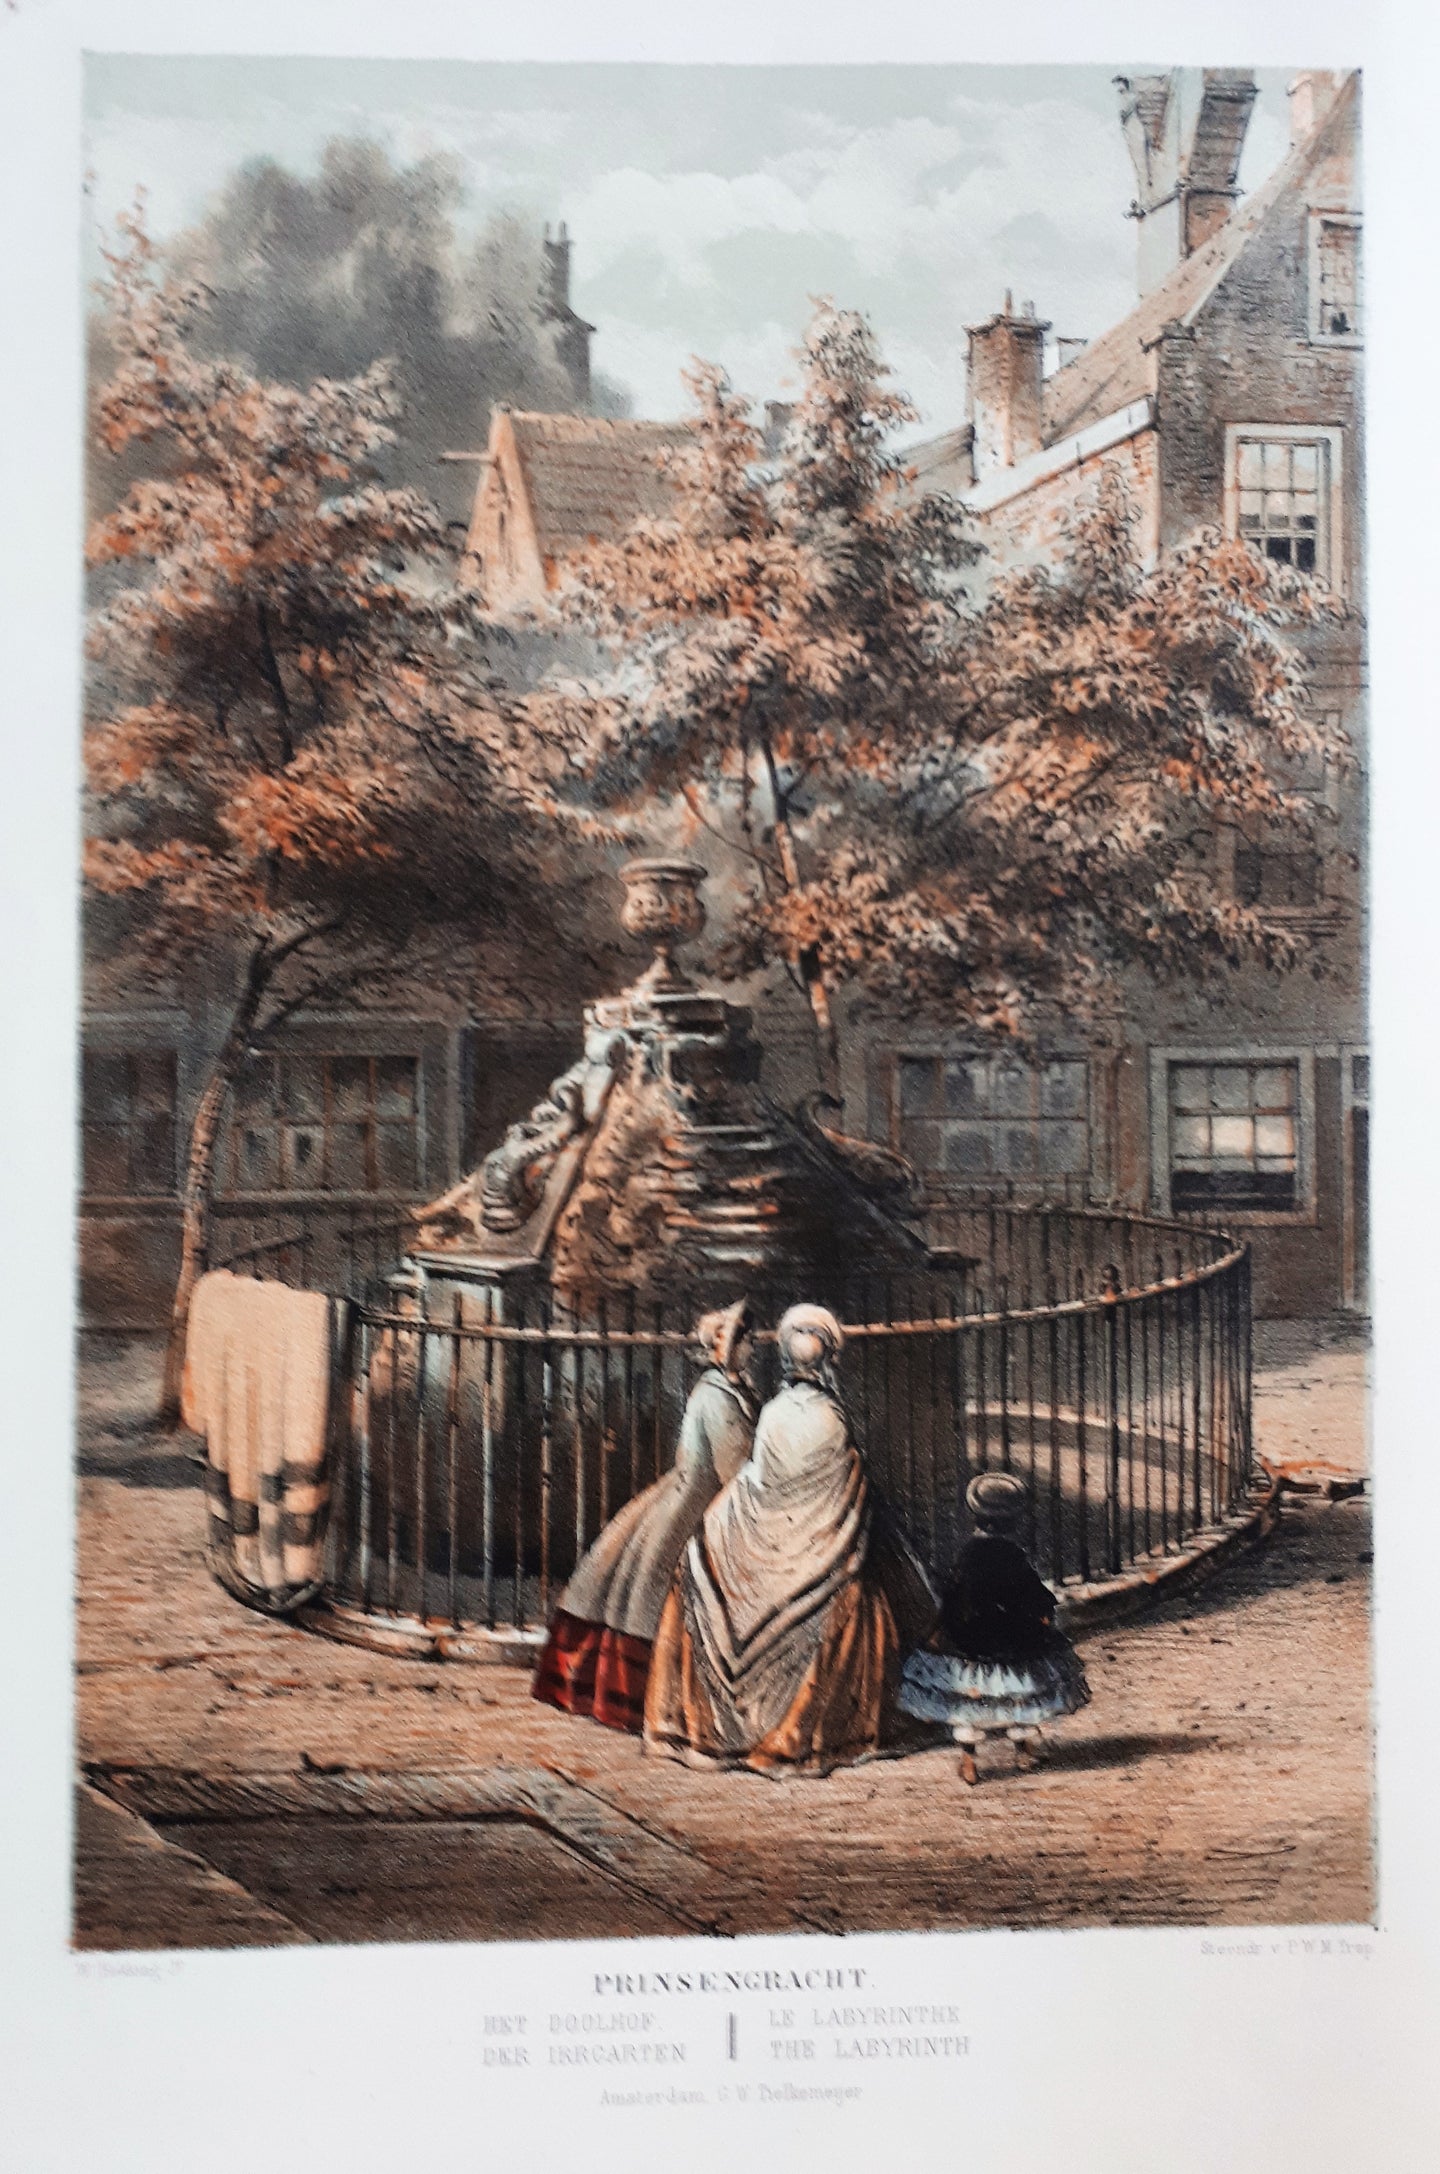 Amsterdam Prinsengracht De oude doolhof - W Hekking jr/ GW Tielkemeijer, - 1869